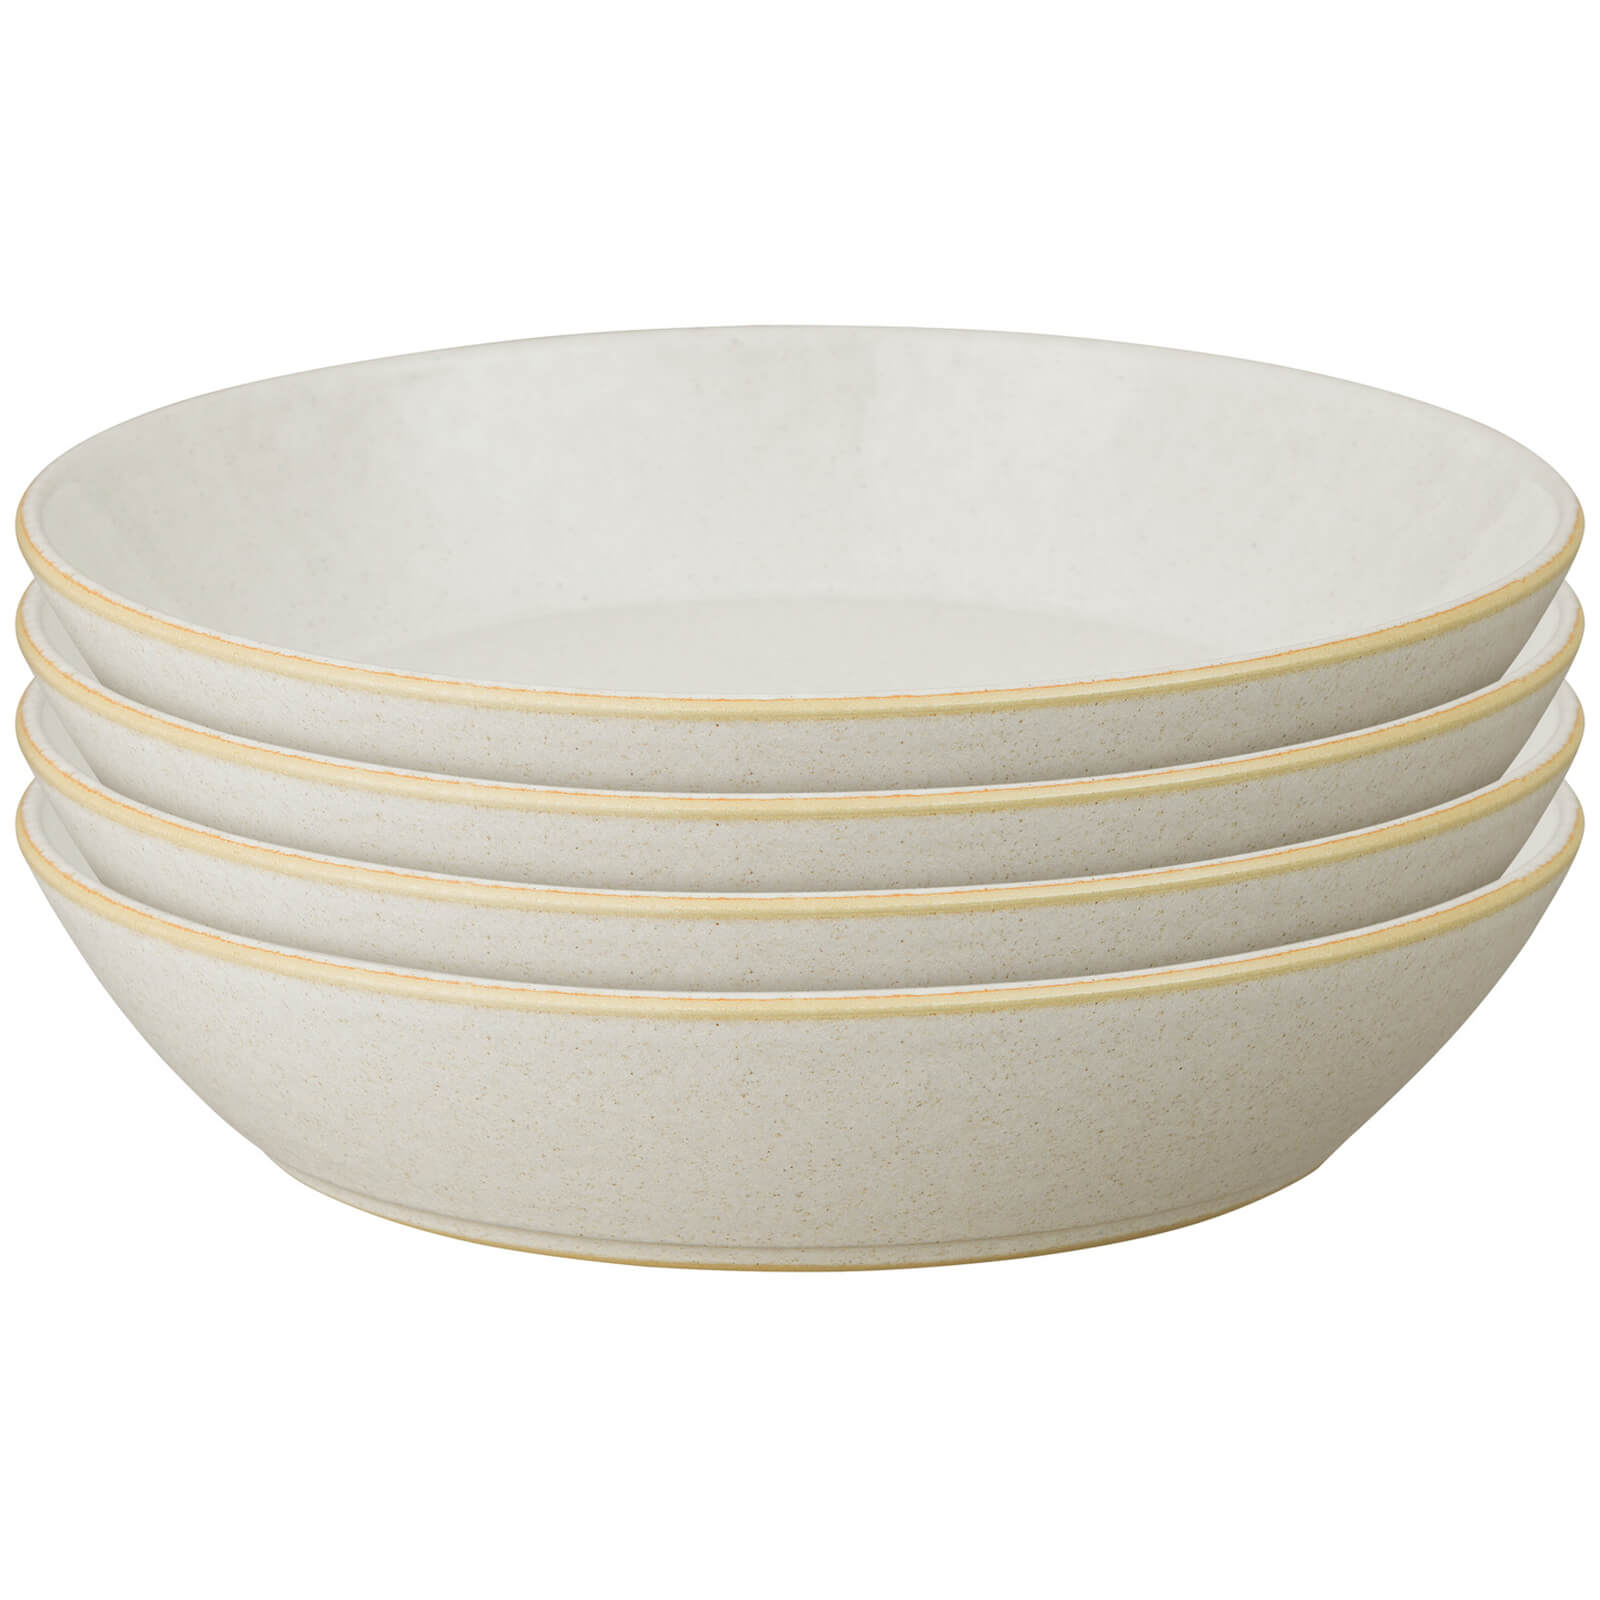 Denby Impression Cream Pasta Bowl - Set of 4 von Denby